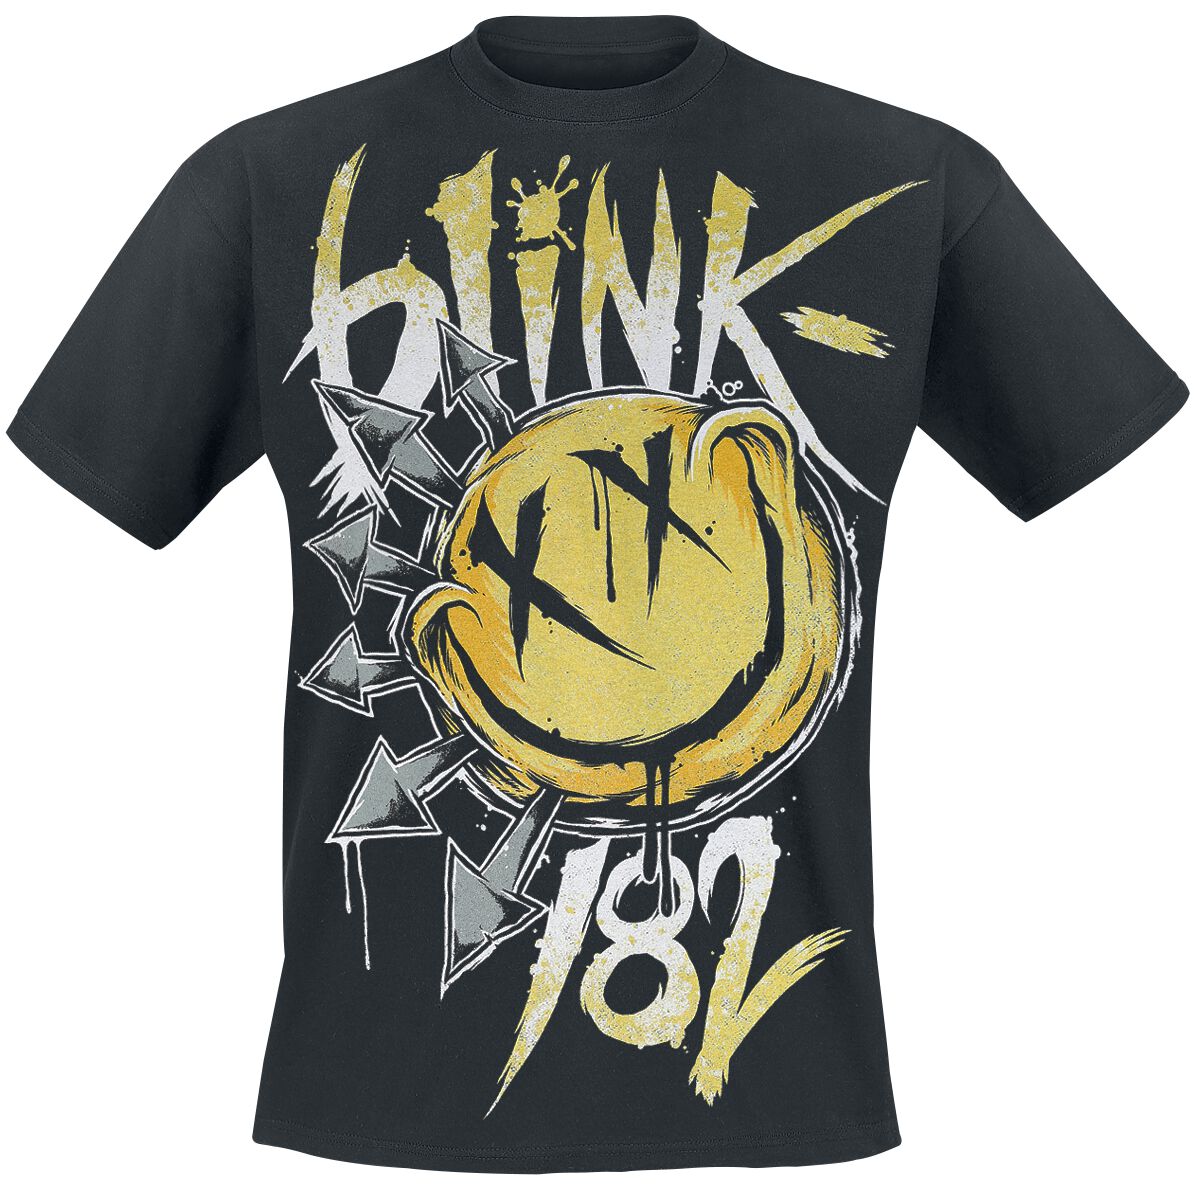 Blink-182 T-Shirt - Big Smile - S bis XXL - für Männer - Größe M - schwarz  - Lizenziertes Merchandise!